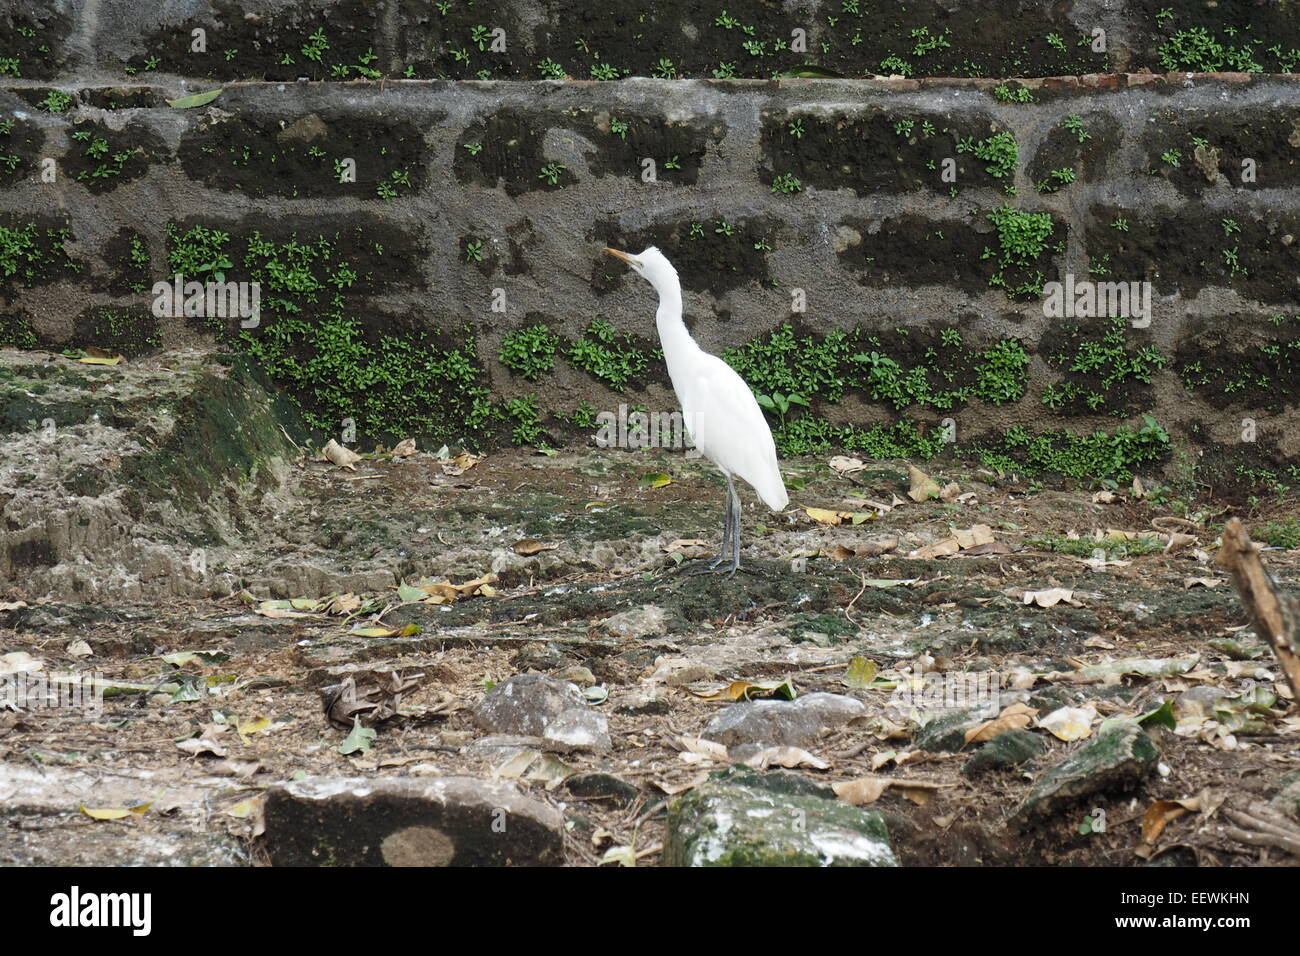 White heron of Petulu, Ubud, Bali. Stock Photo